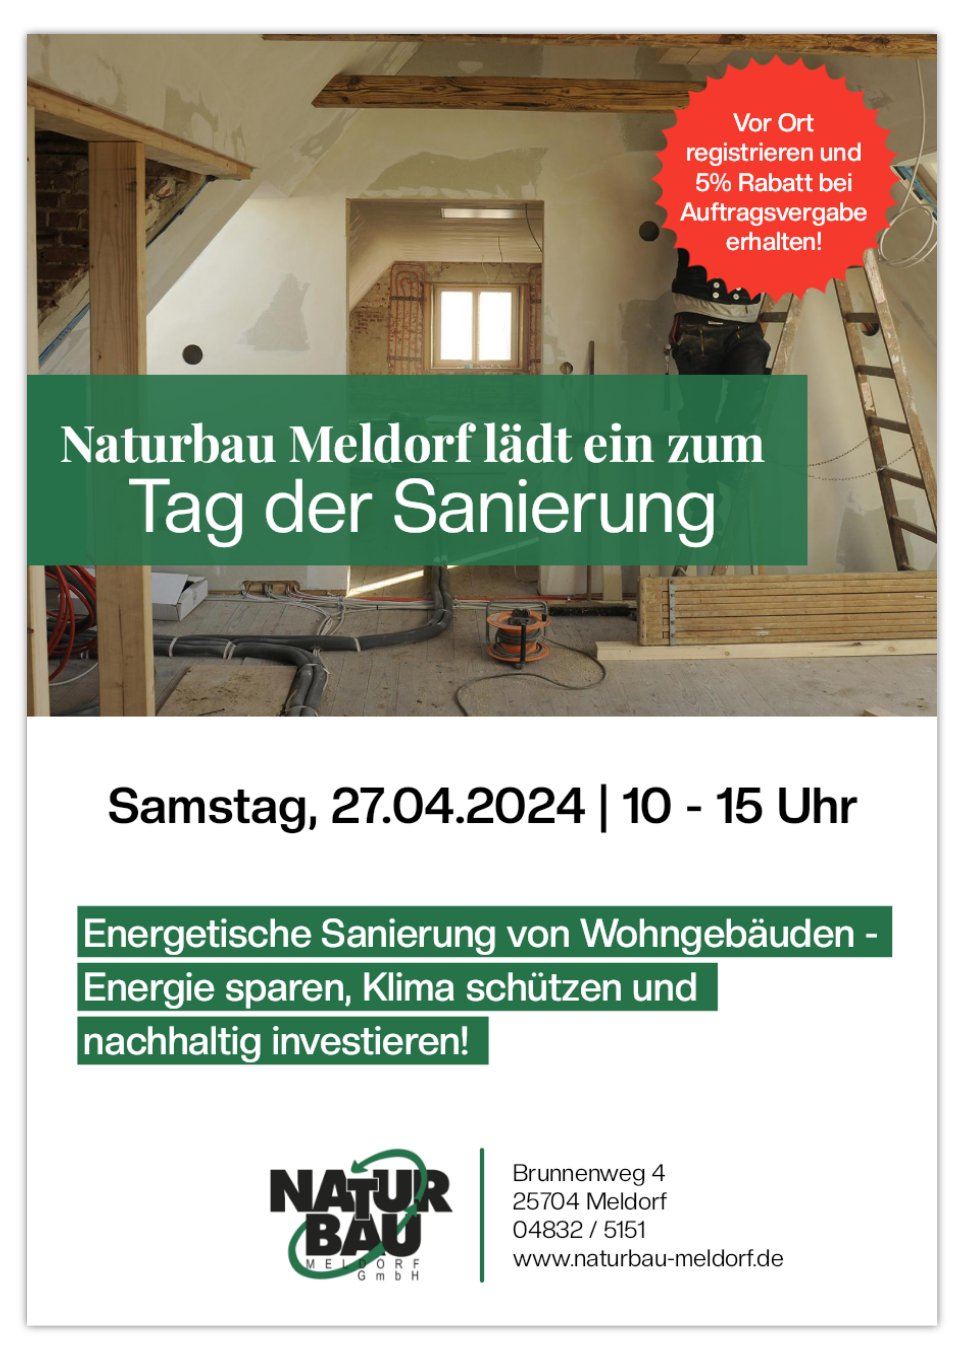 Naturbau Meldorf lädt ein zum Tag der Sanierung am Samstag, 27.04.2024